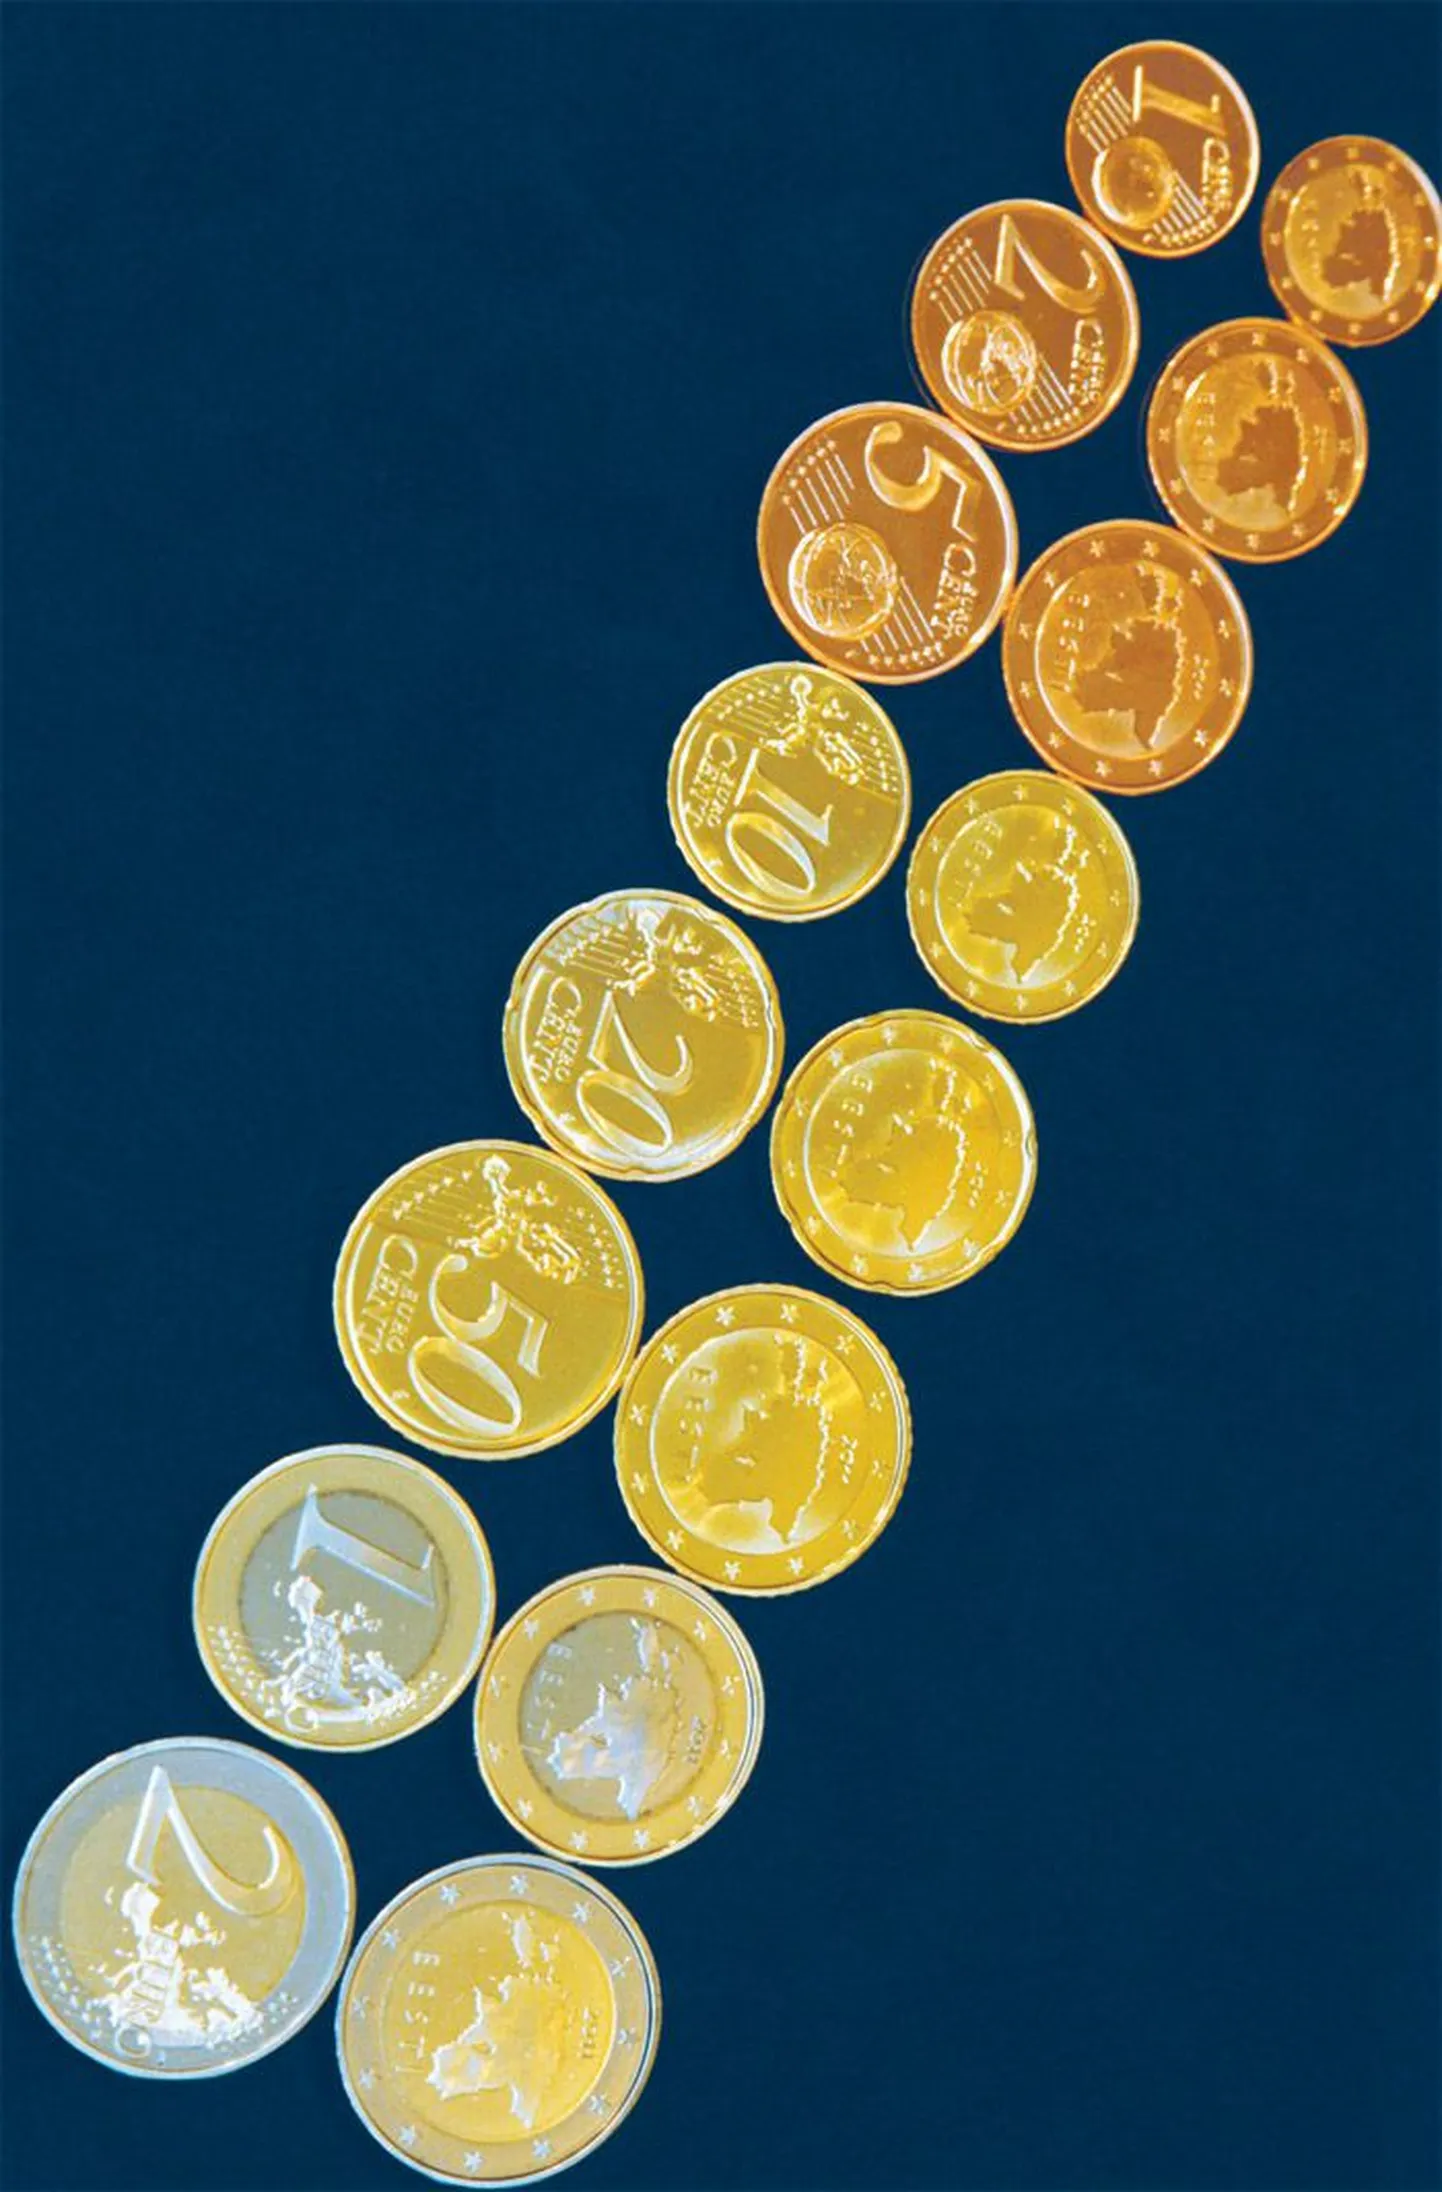 Pildil on Eesti euromündid.